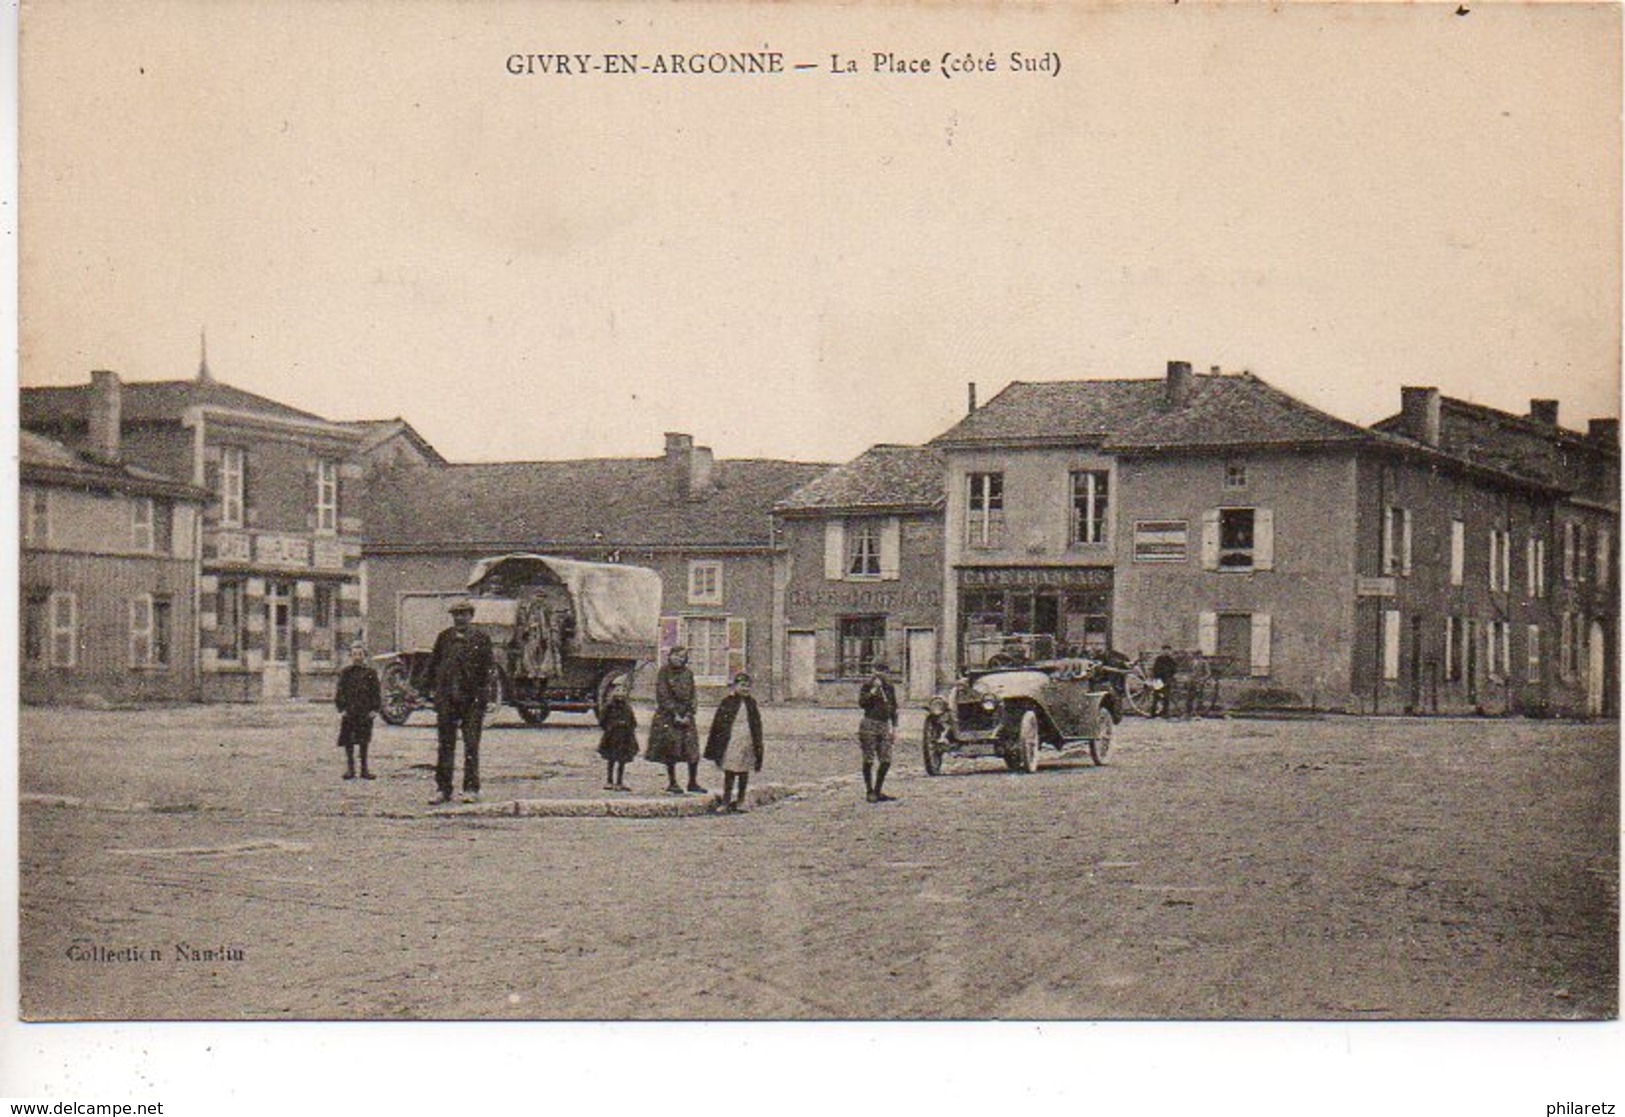 Givry En Argonne : La Place (côté Sud) - Givry En Argonne